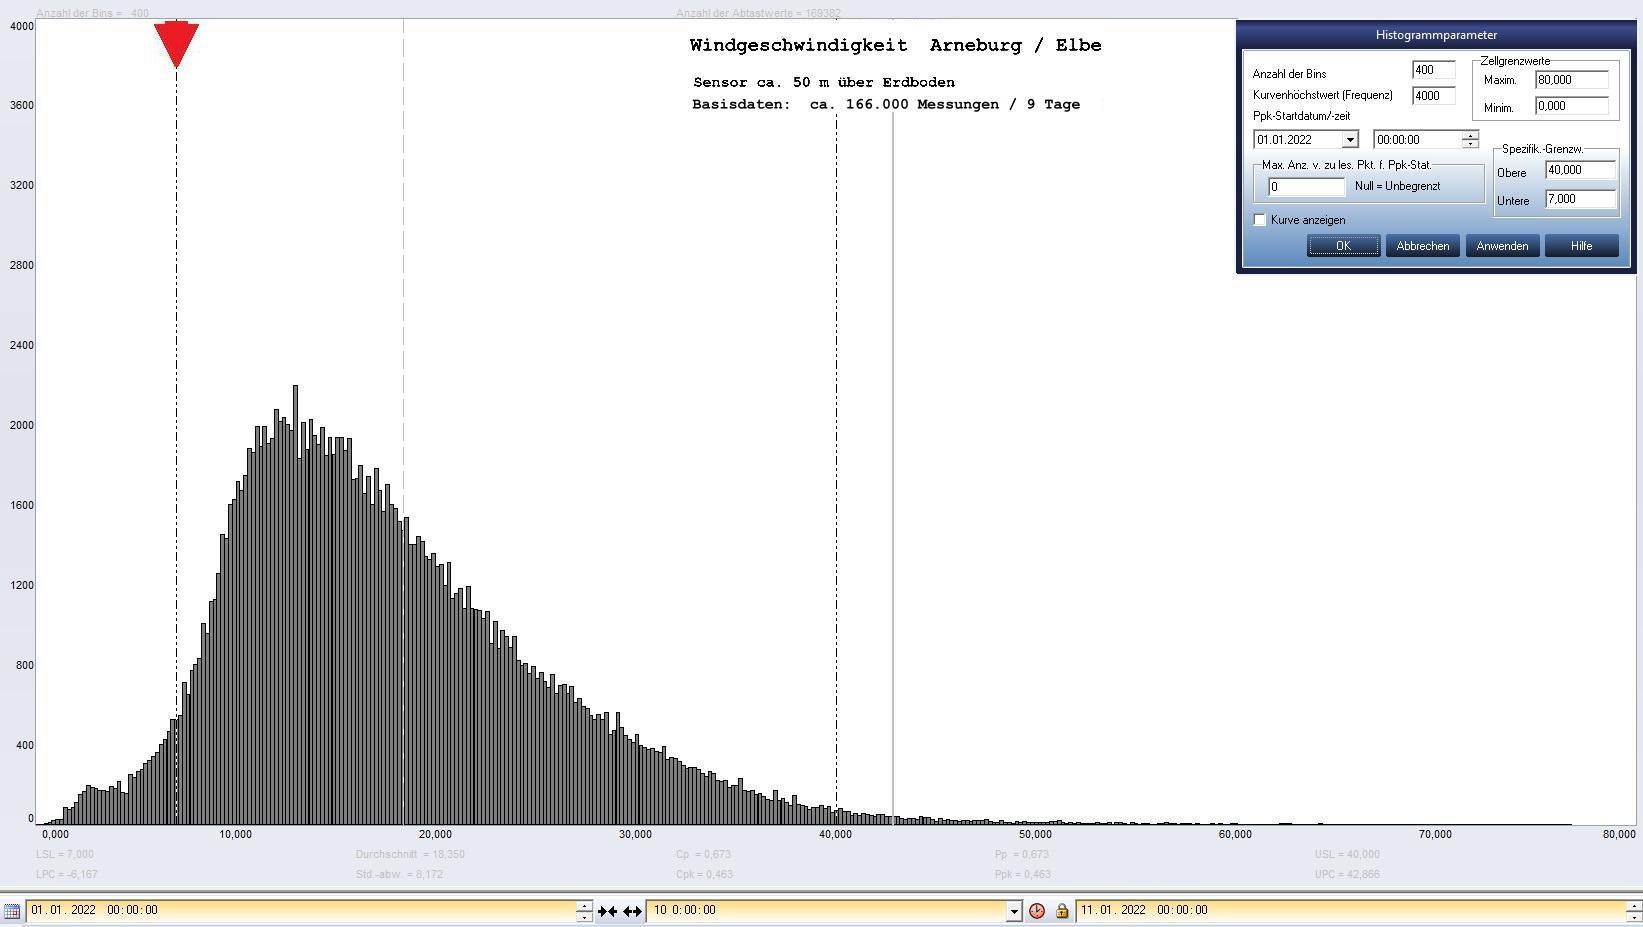 Arneburg 9 Tage Histogramm Winddaten, ab 01.01.2022
  Sensor auf Gebude, ca. 50 m ber Erdboden, Basis: 5s-Aufzeichnung